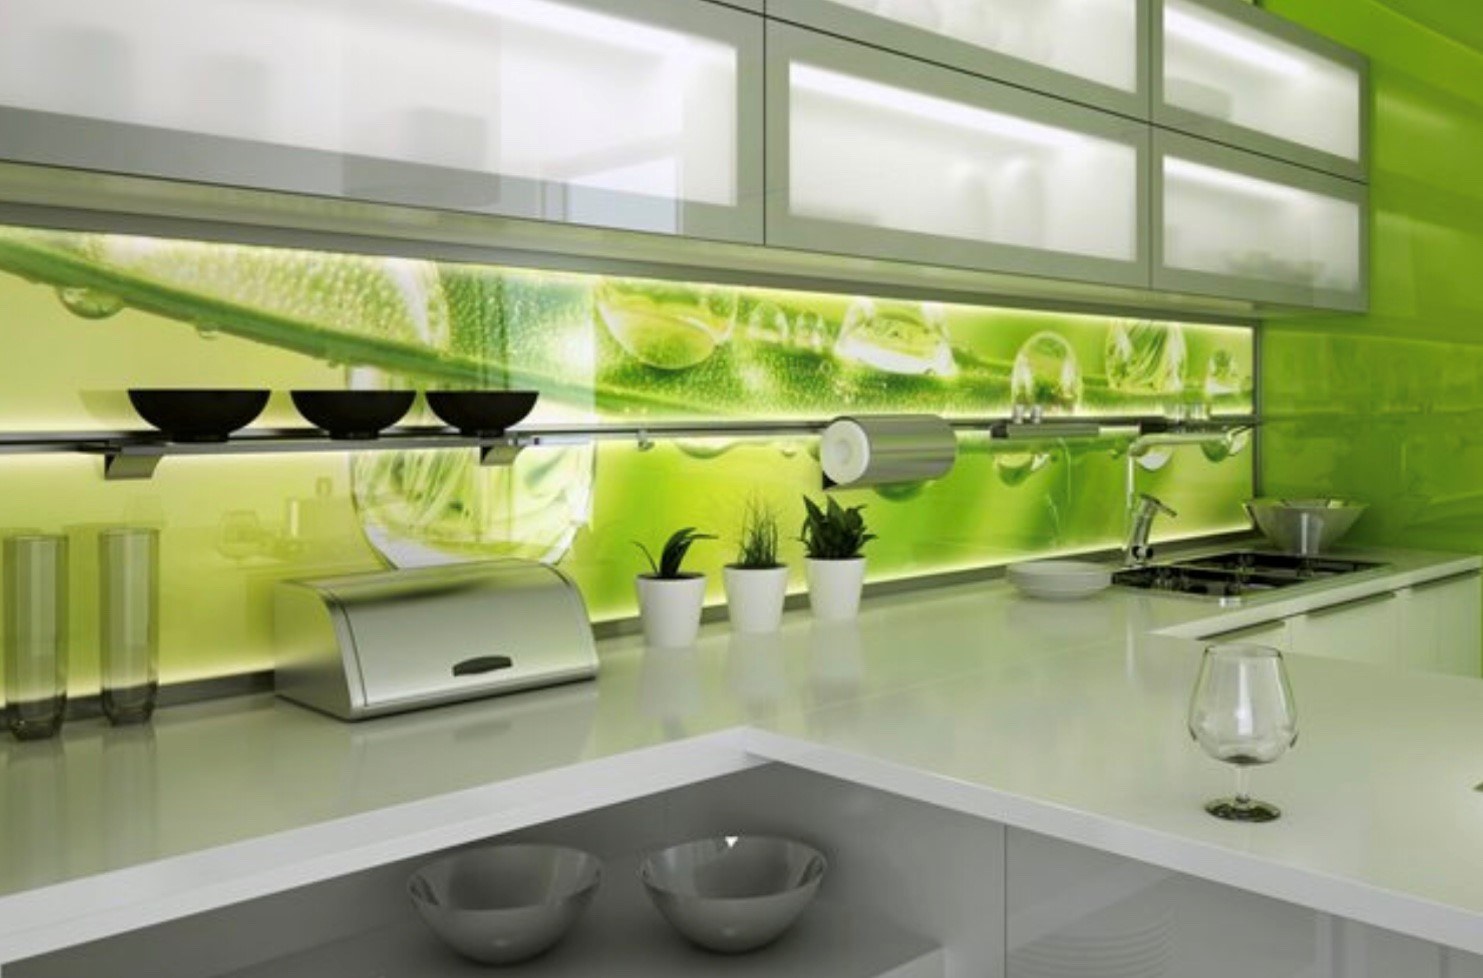 Стеновая панель из стекла. Скинали Леруа Мерлен фартук для кухни. Стеклянный фартук для кухни Леруа Мерлен. Стеклянная панель для кухни фартук. Стеновая панель для кухни зеленая.